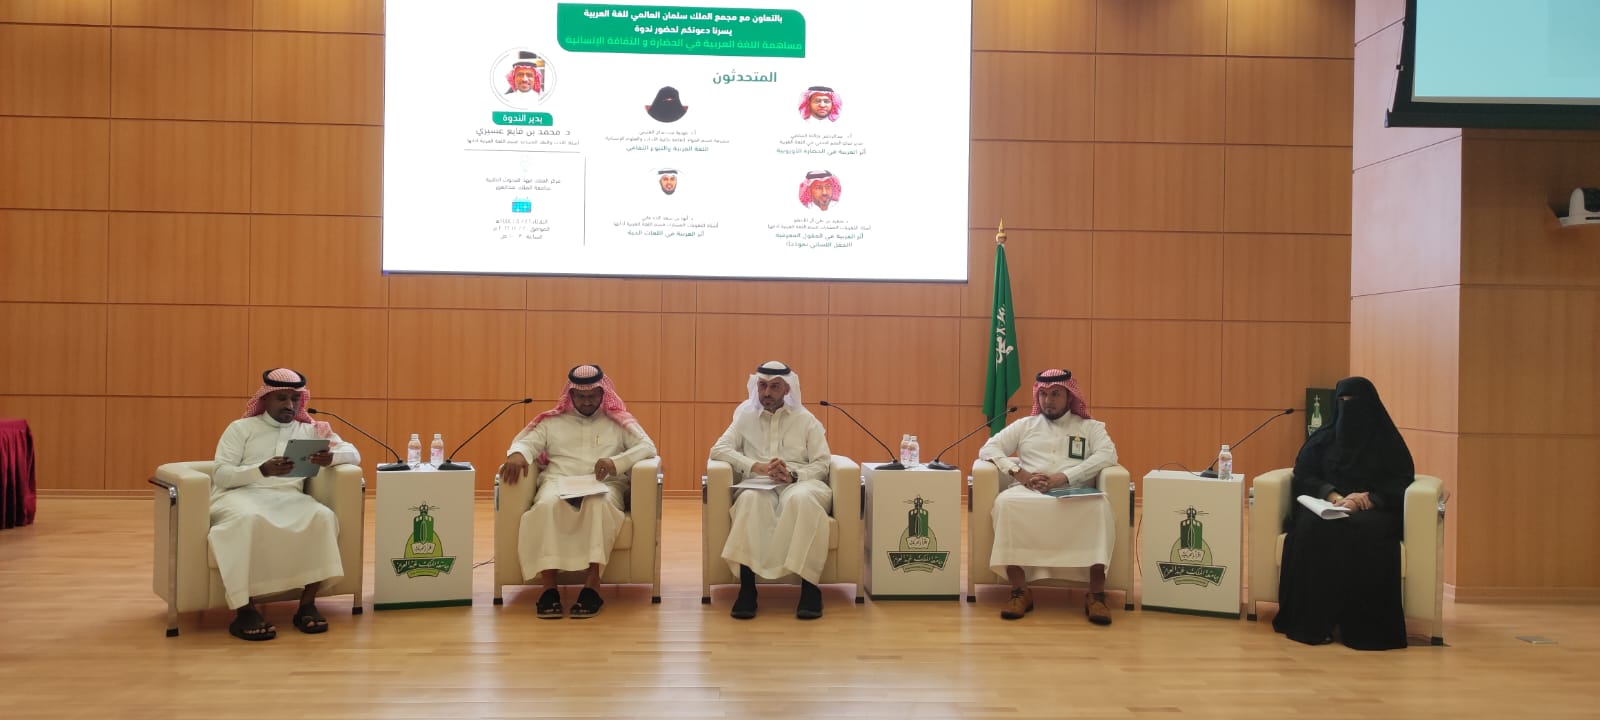 جامعة الملك عبدالعزيز تنفذ دورة”مساهمة اللغة العربية في الثقافة الإنسانية”